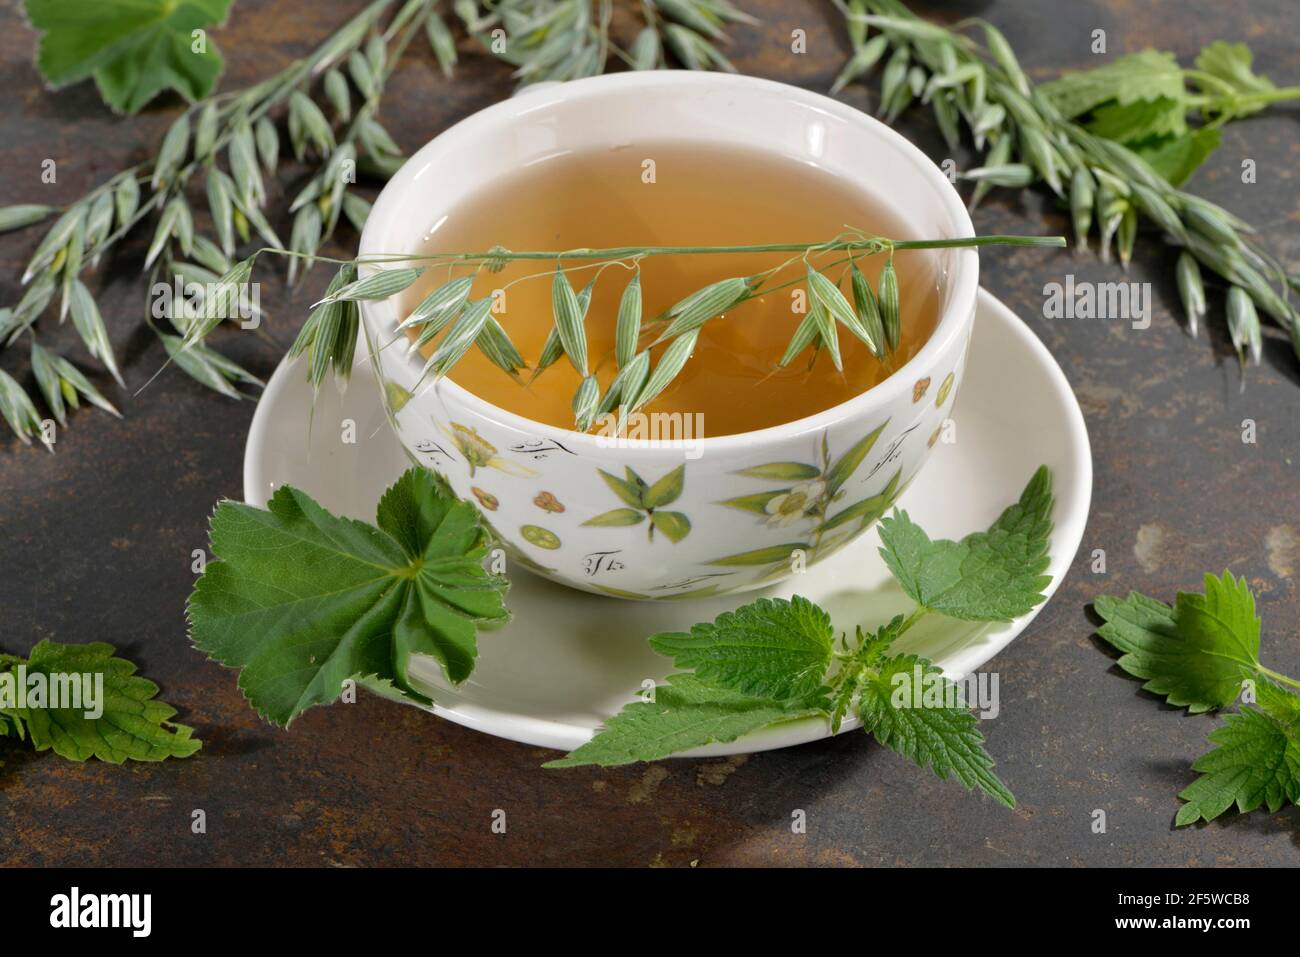 Oat herb, oat straw, nettle, Alpine lady's mantle (Avena sativa) (Urtica dioica) (Alchemilla alpina), green oat tea Stock Photo